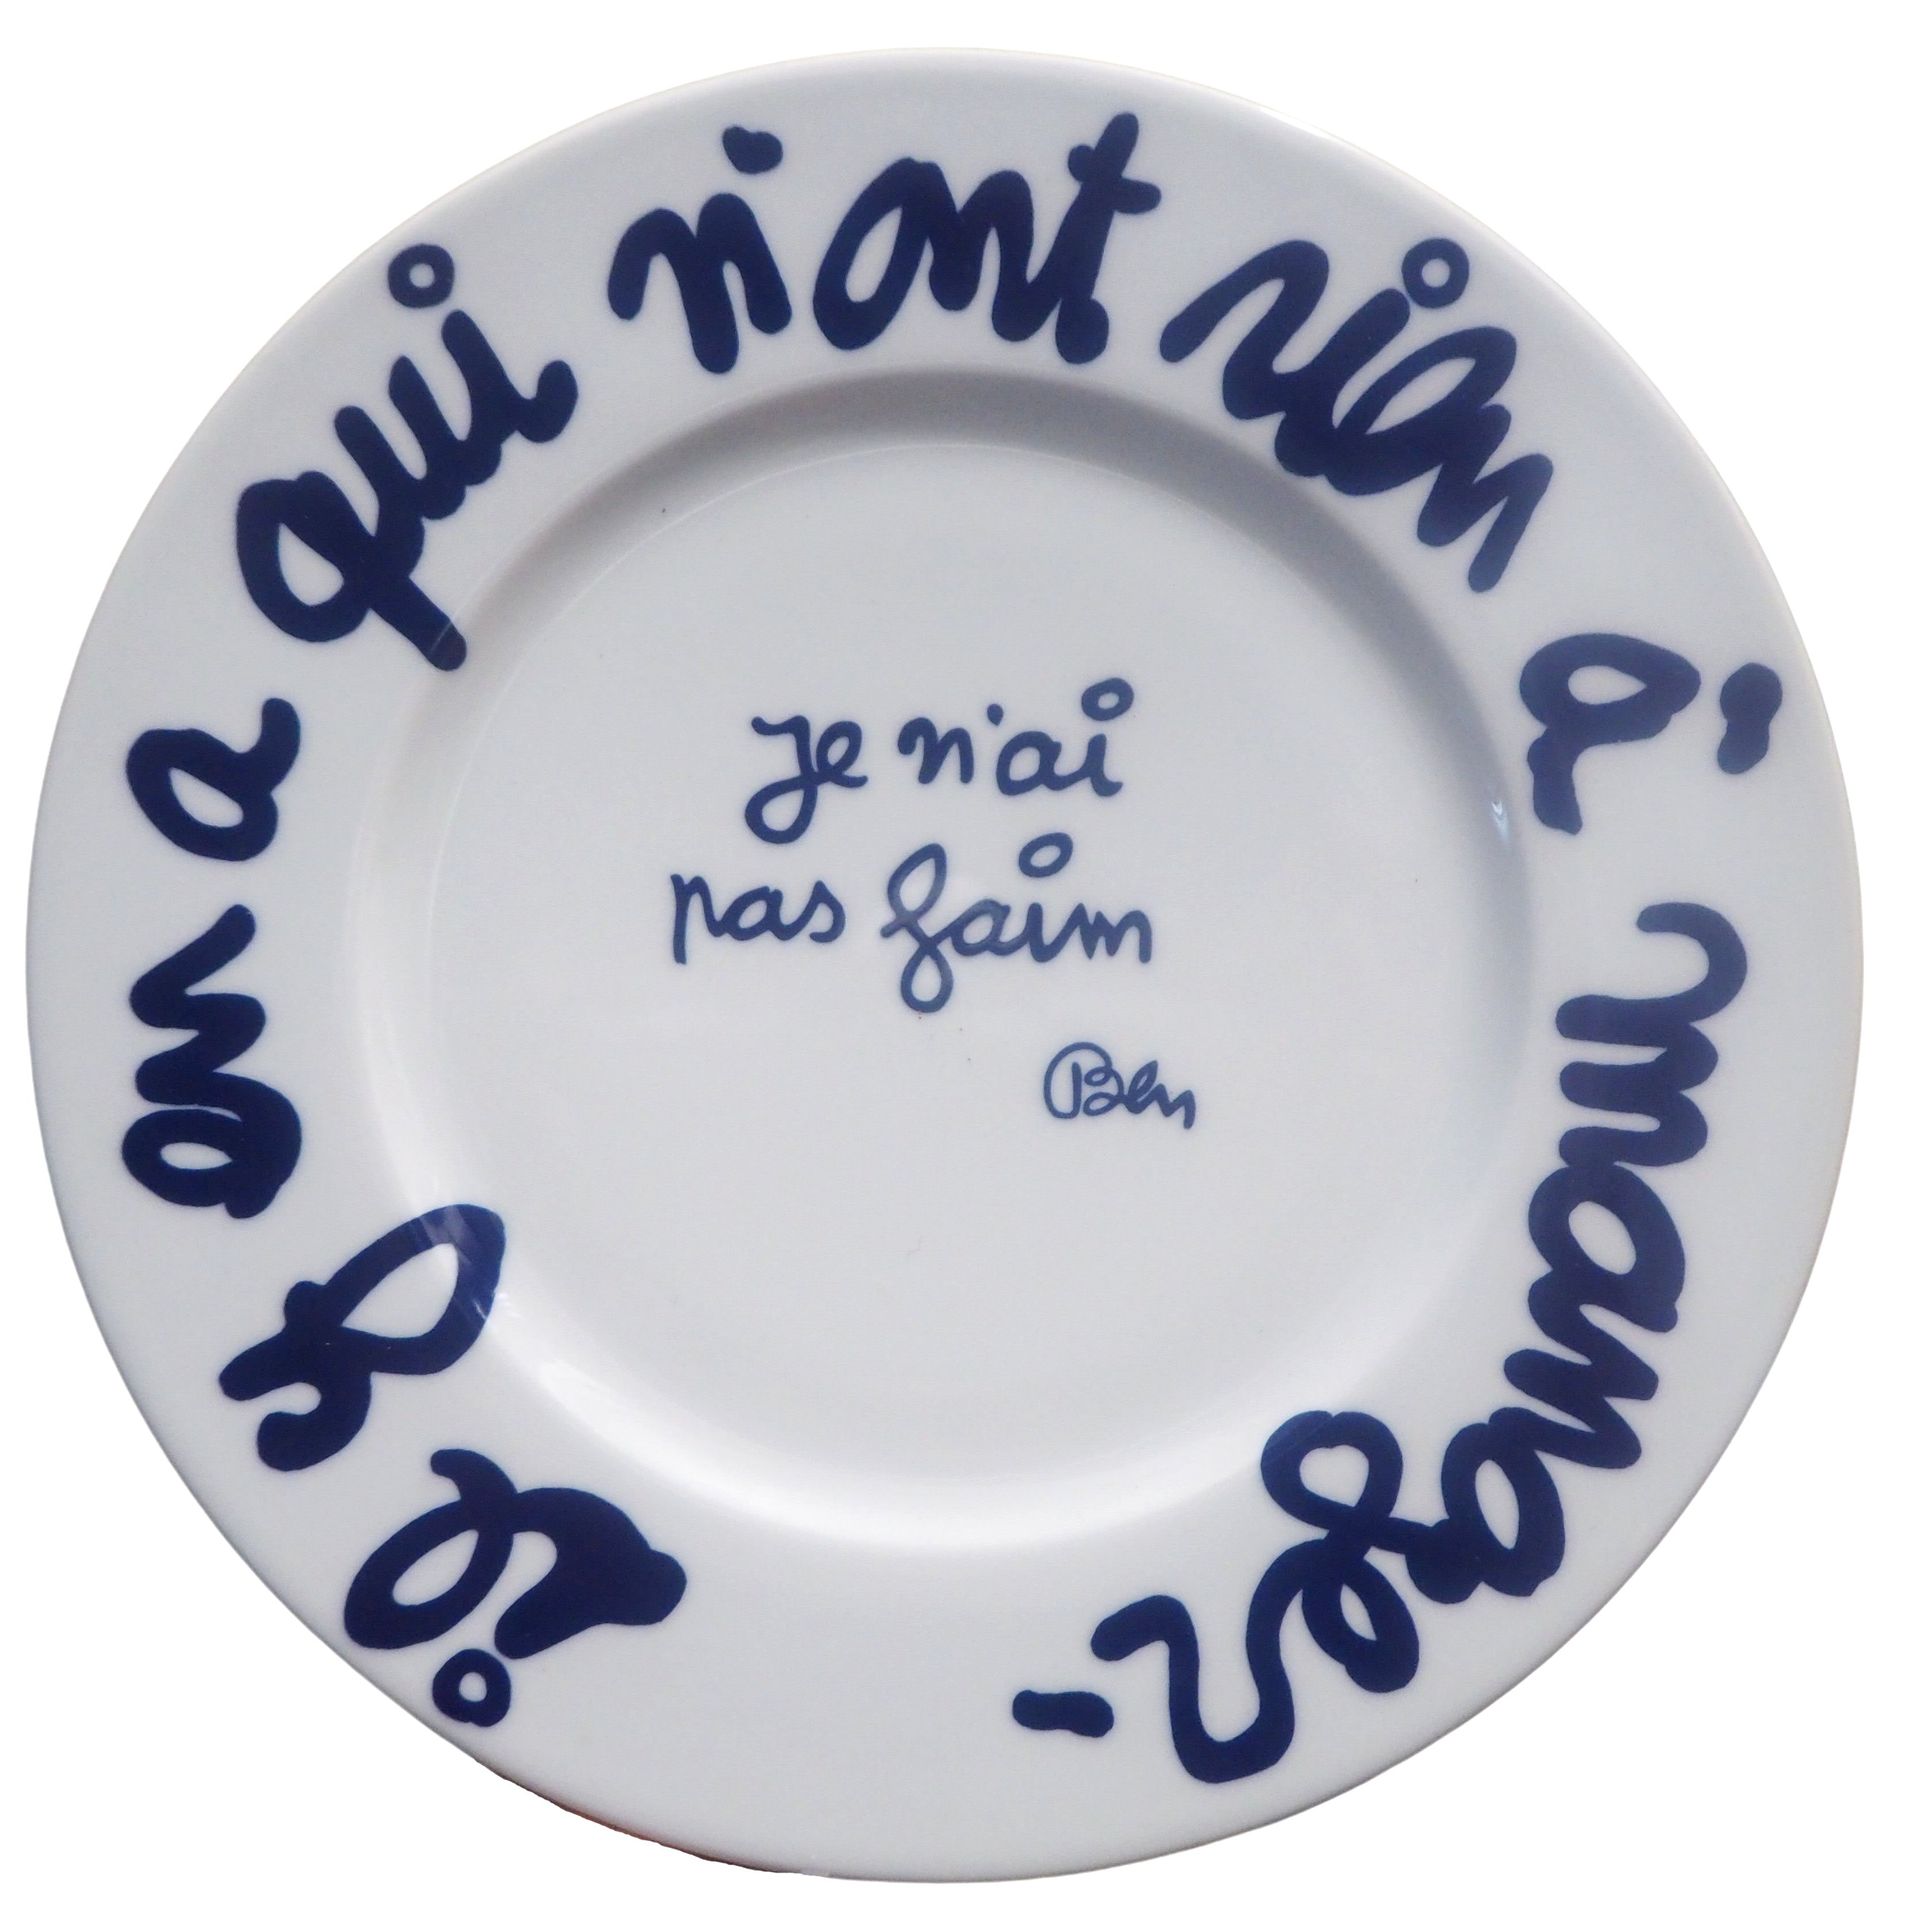 BEN Ben (Ben Vautier dit)

Je n'ai pas faim, 2000

Sérigraphie sur porcelaine

S&hellip;